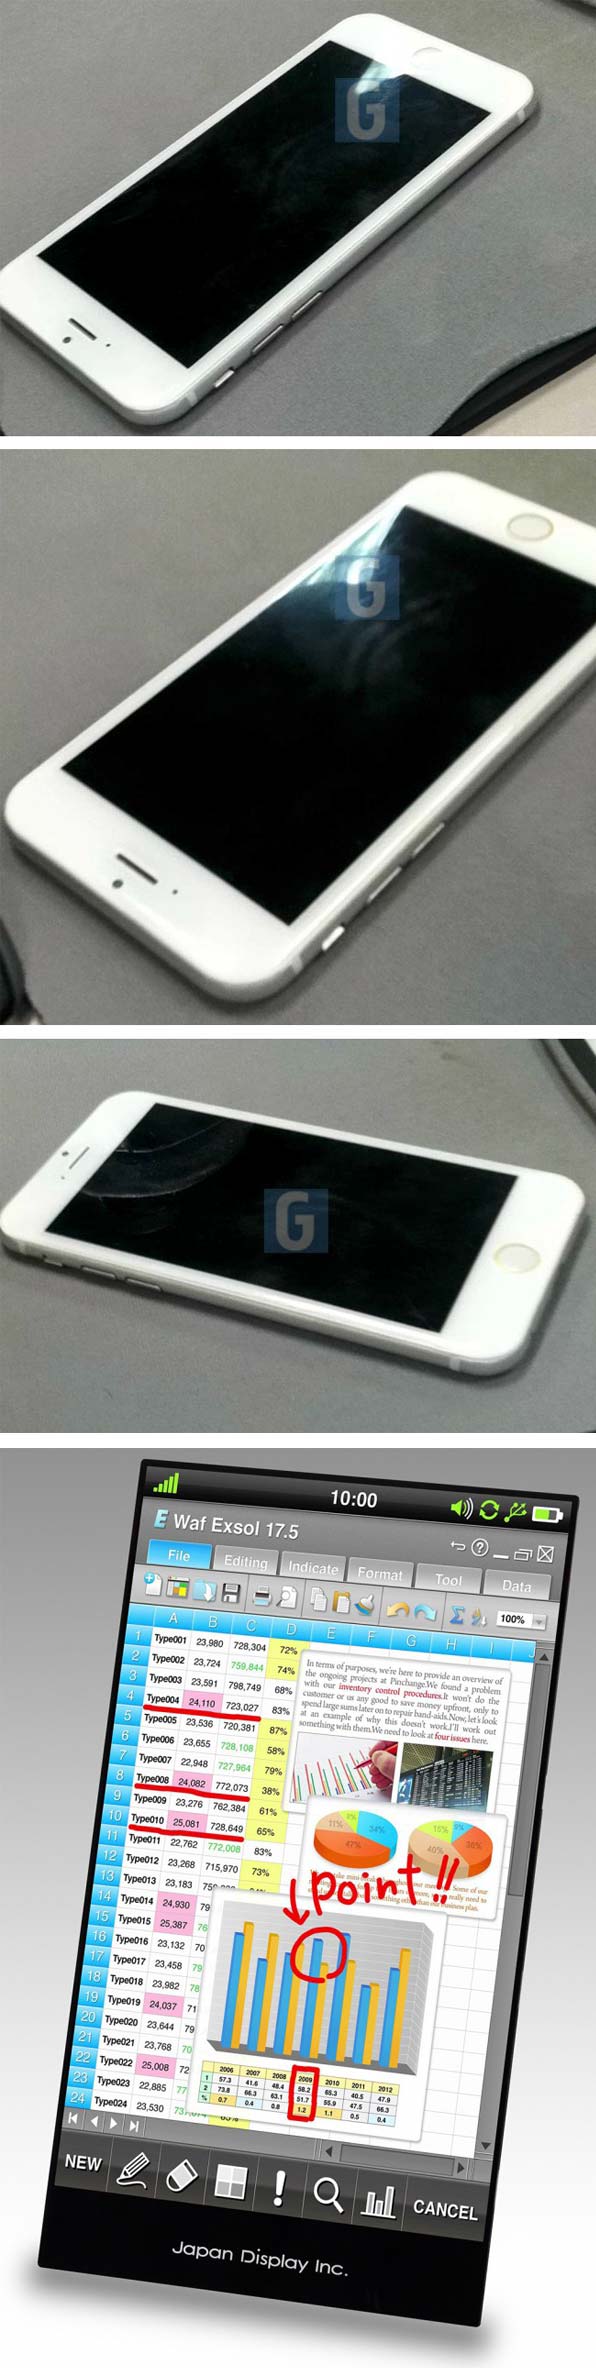 iPhone 6 и дисплей от JDI